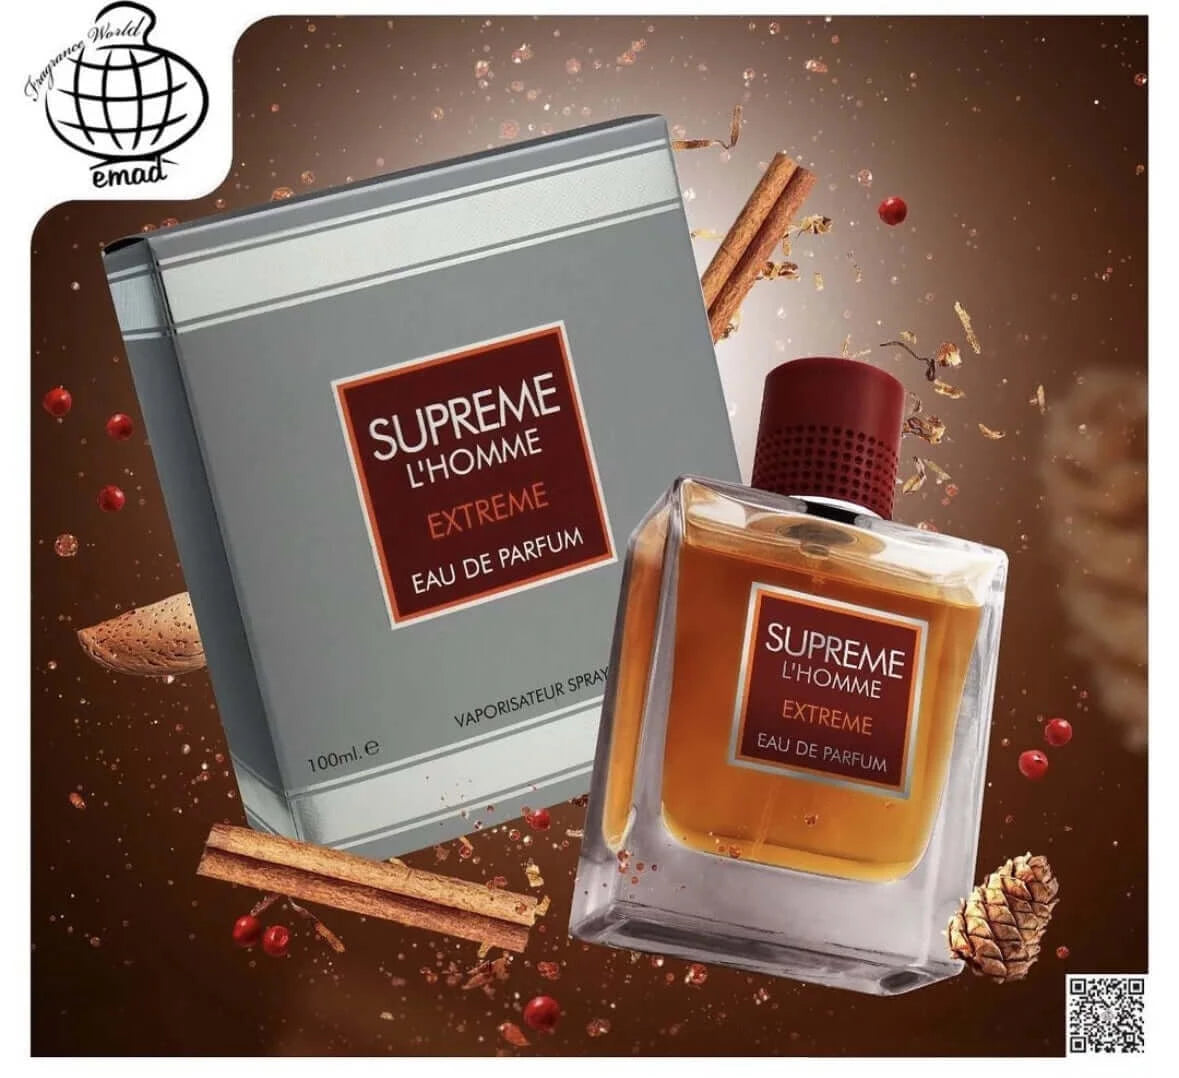 Midnight Oud Eau de Parfum by Fragrance World 3.4 fl oz 100ml Perfume